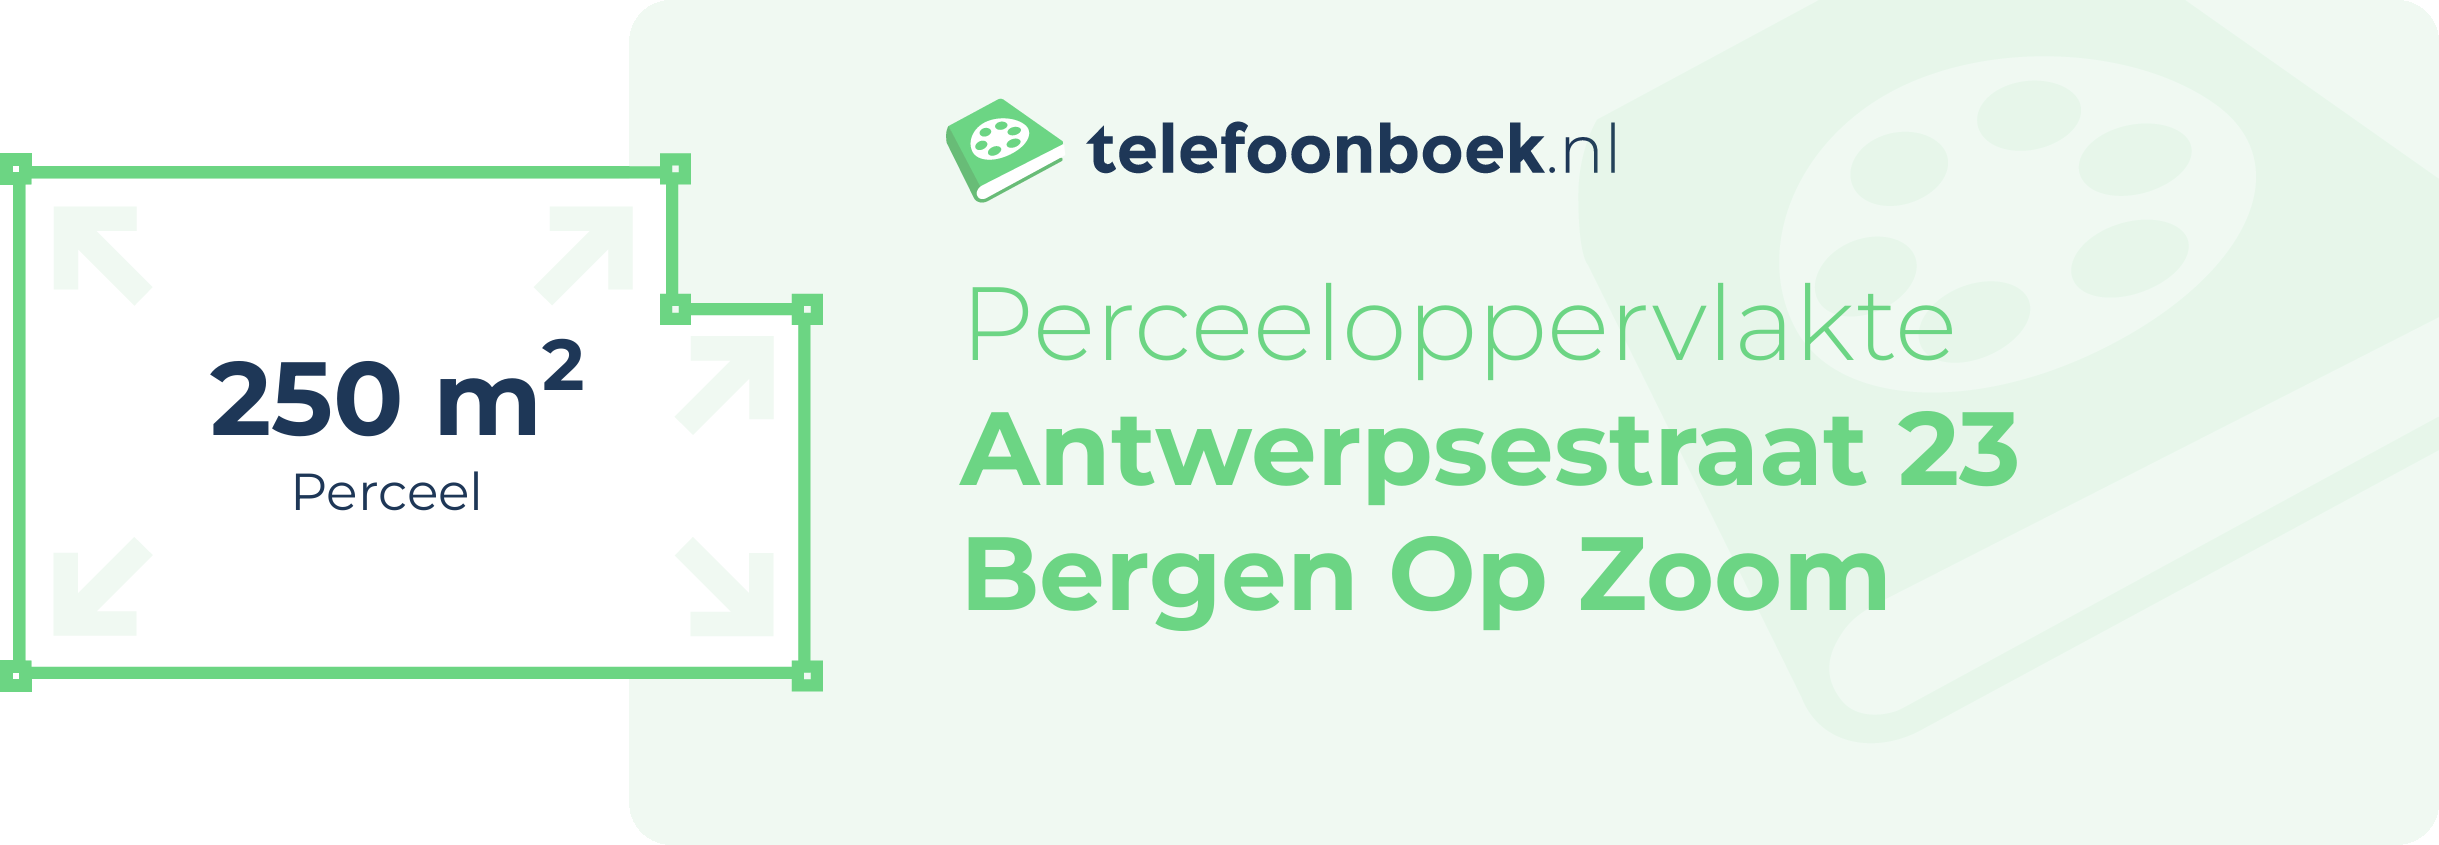 Perceeloppervlakte Antwerpsestraat 23 Bergen Op Zoom